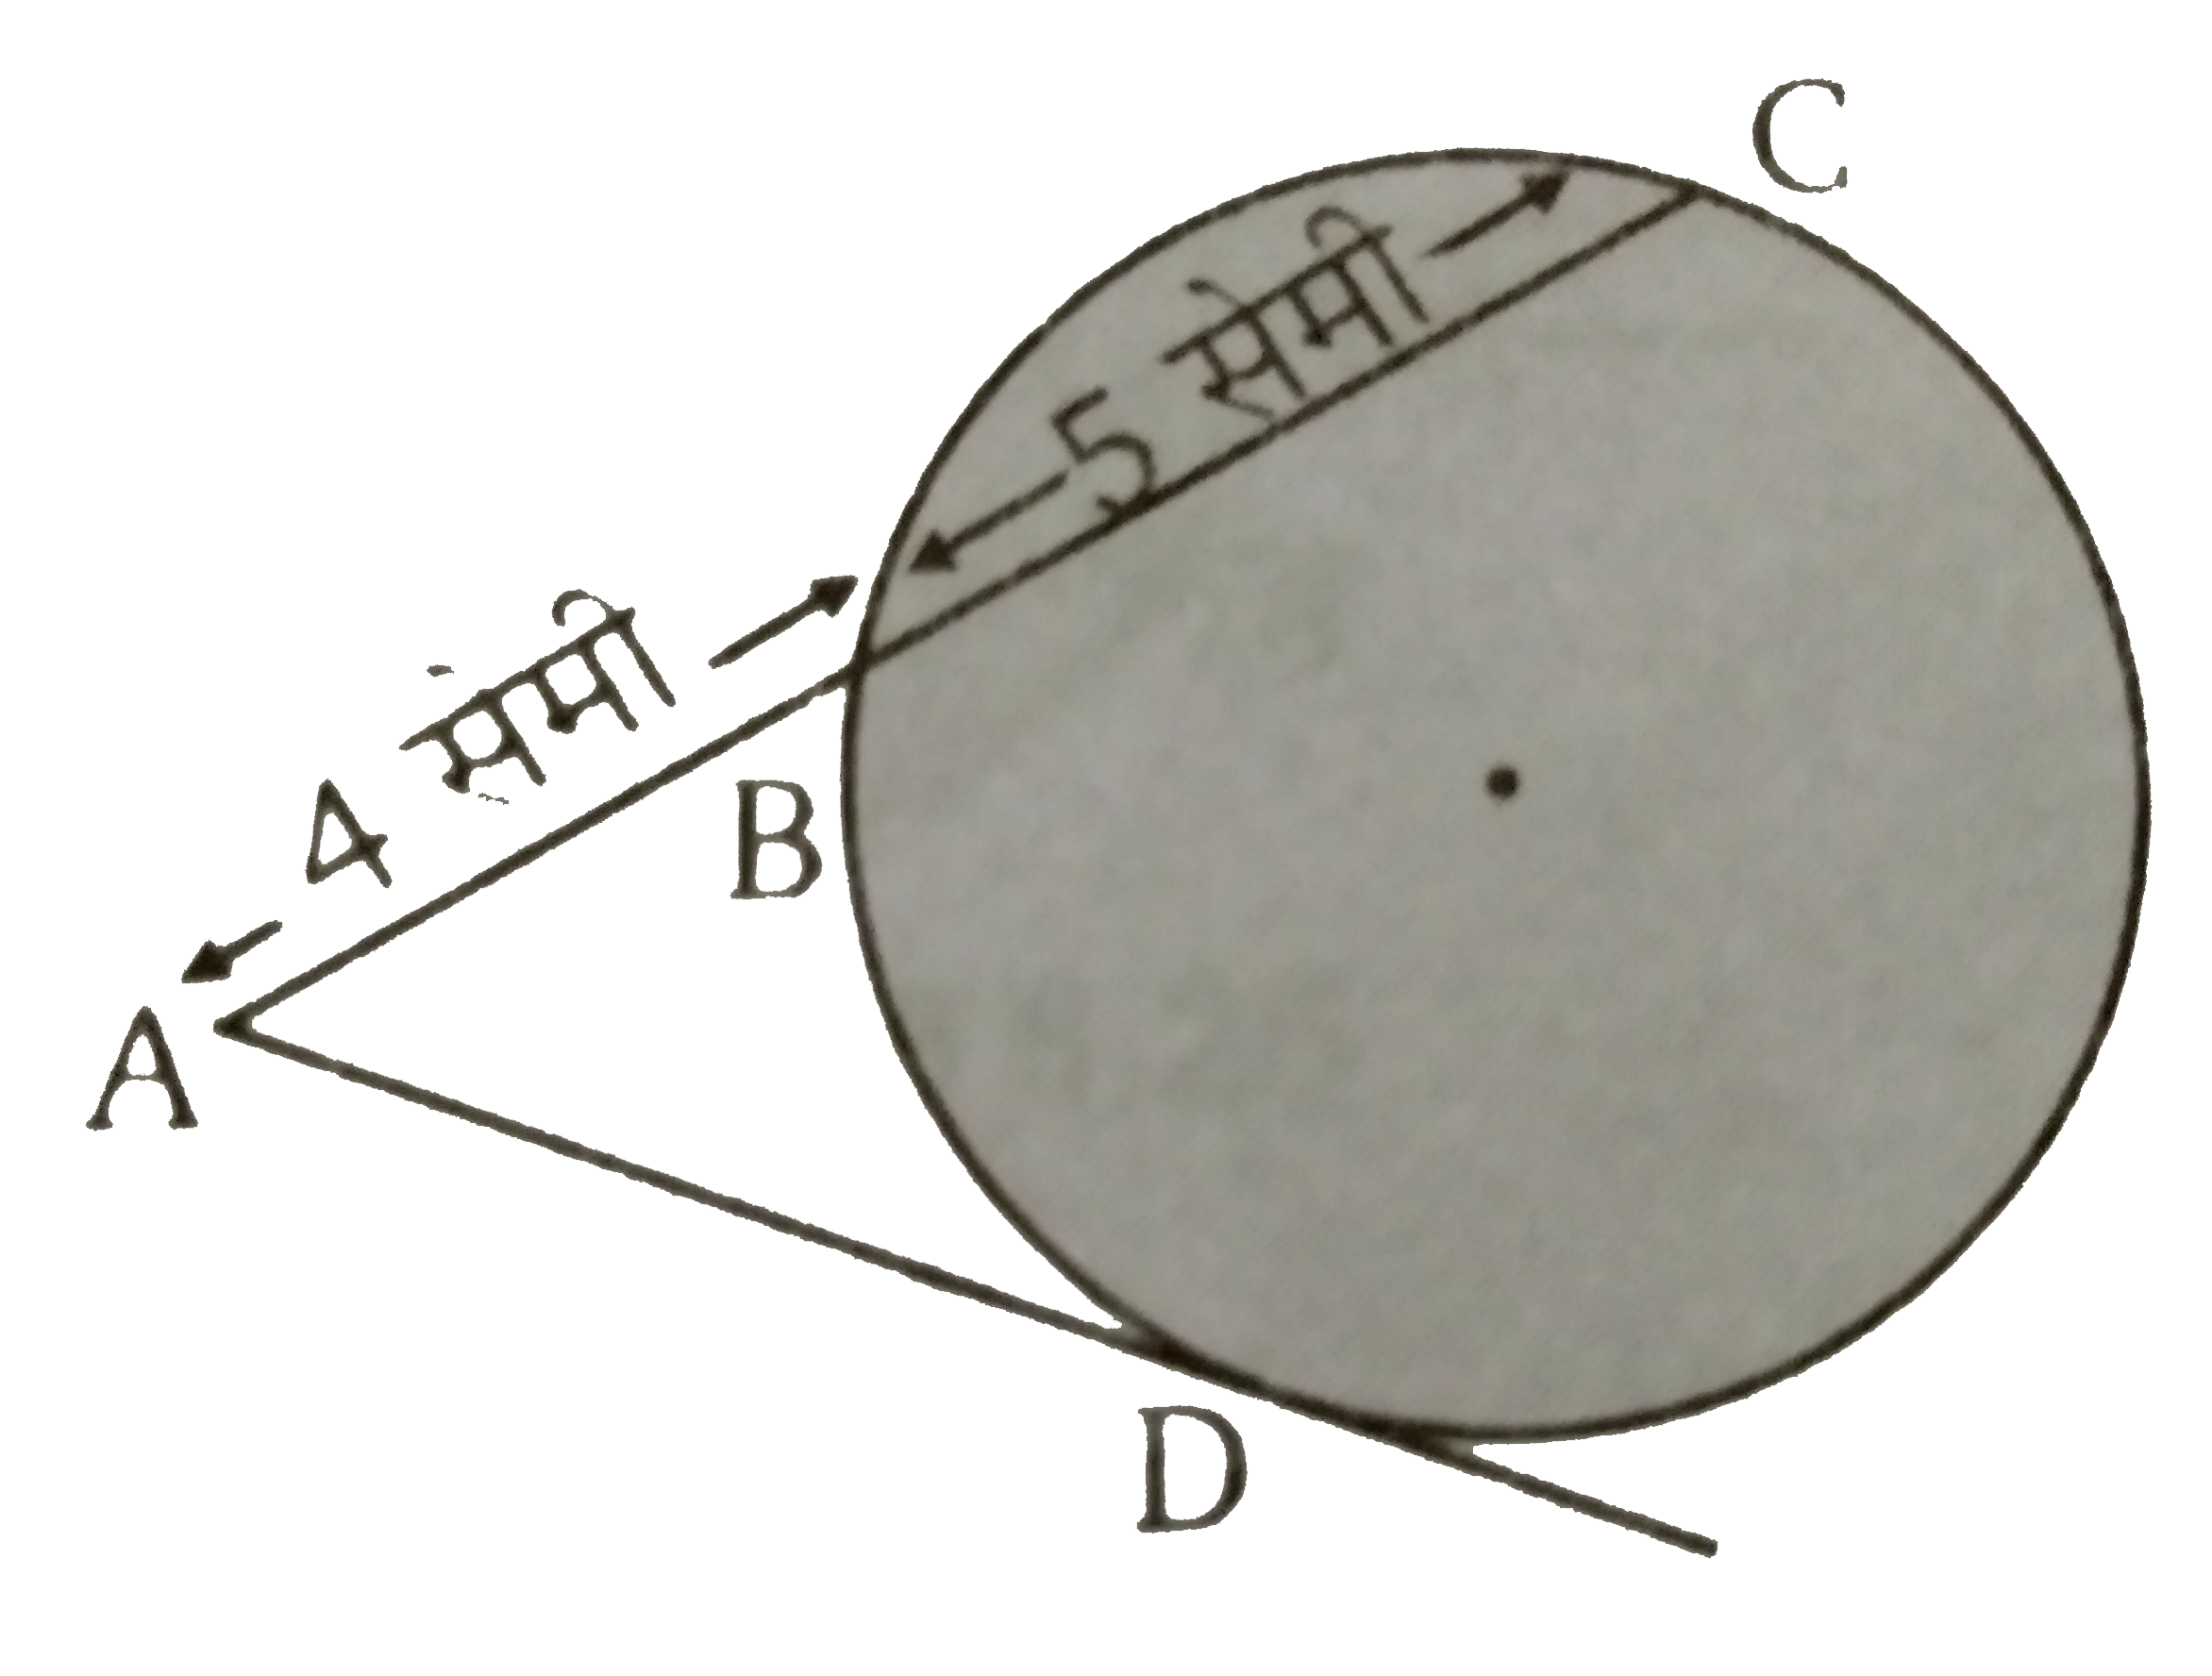 चित्र में AD वृत्त  की  स्पर्श रेखा तथा ABC  इसकी छेदक रेखा है। यदि AB = 4  सेमी तथा BC = 5   सेमी है तो AD  की लम्बाई ज्ञात कीजिए ।